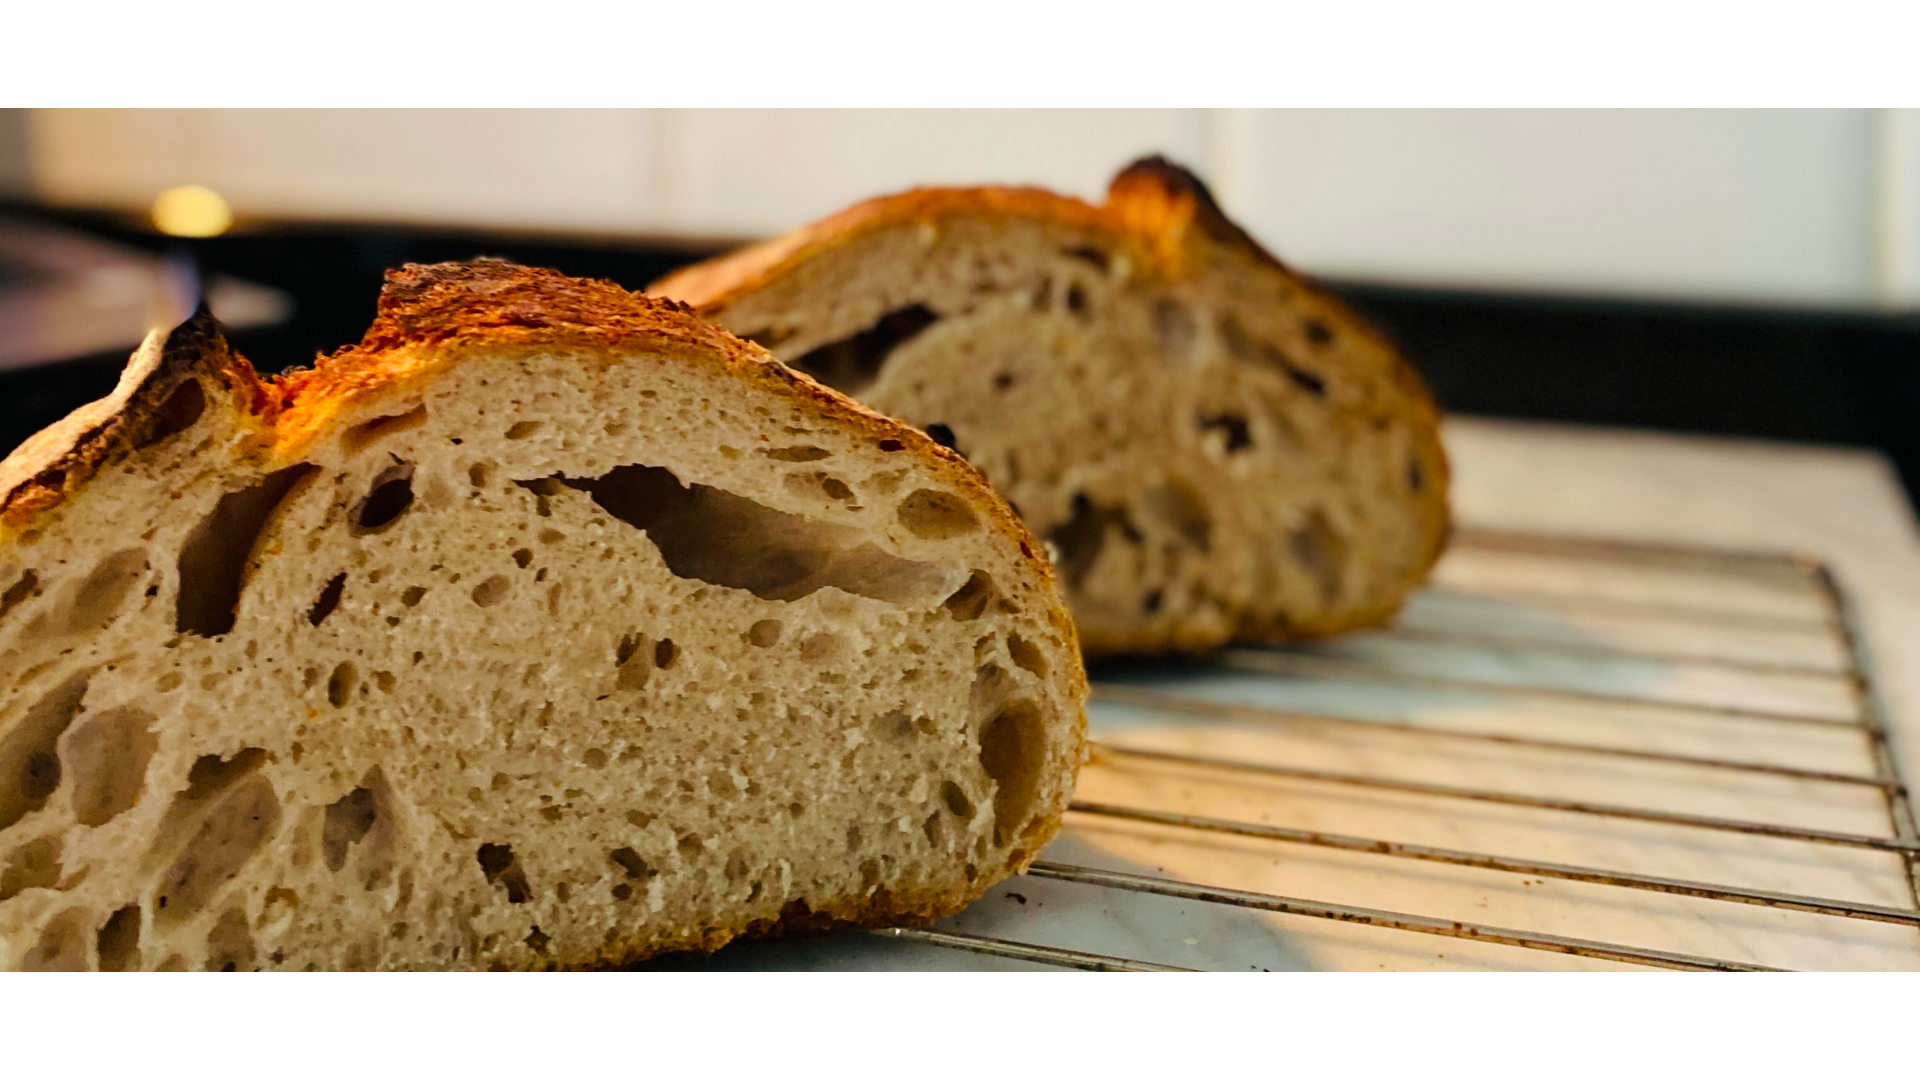 Dilim dilim kesilmiş ekmek mayalı ekmek görseli.